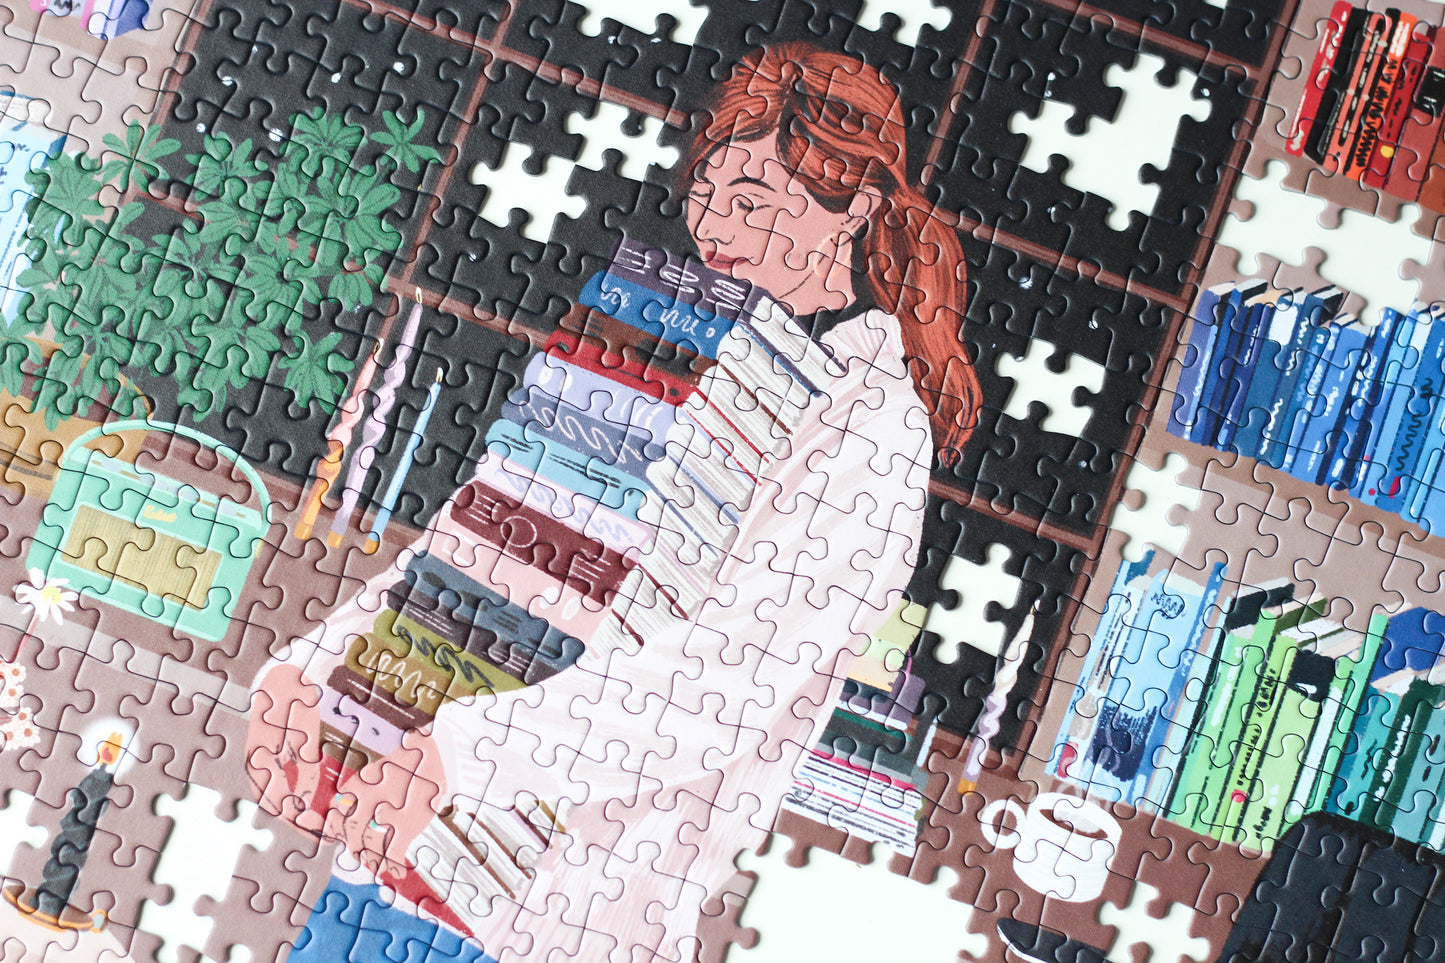 Nachhaltiges 1000-Teile-Puzzle, das eine Frau mit einem Stapel Bücher in der Hand zeigt. Im Hintergrund ist ein prall gefülltes Bücherregal und zwei süße Katzen.